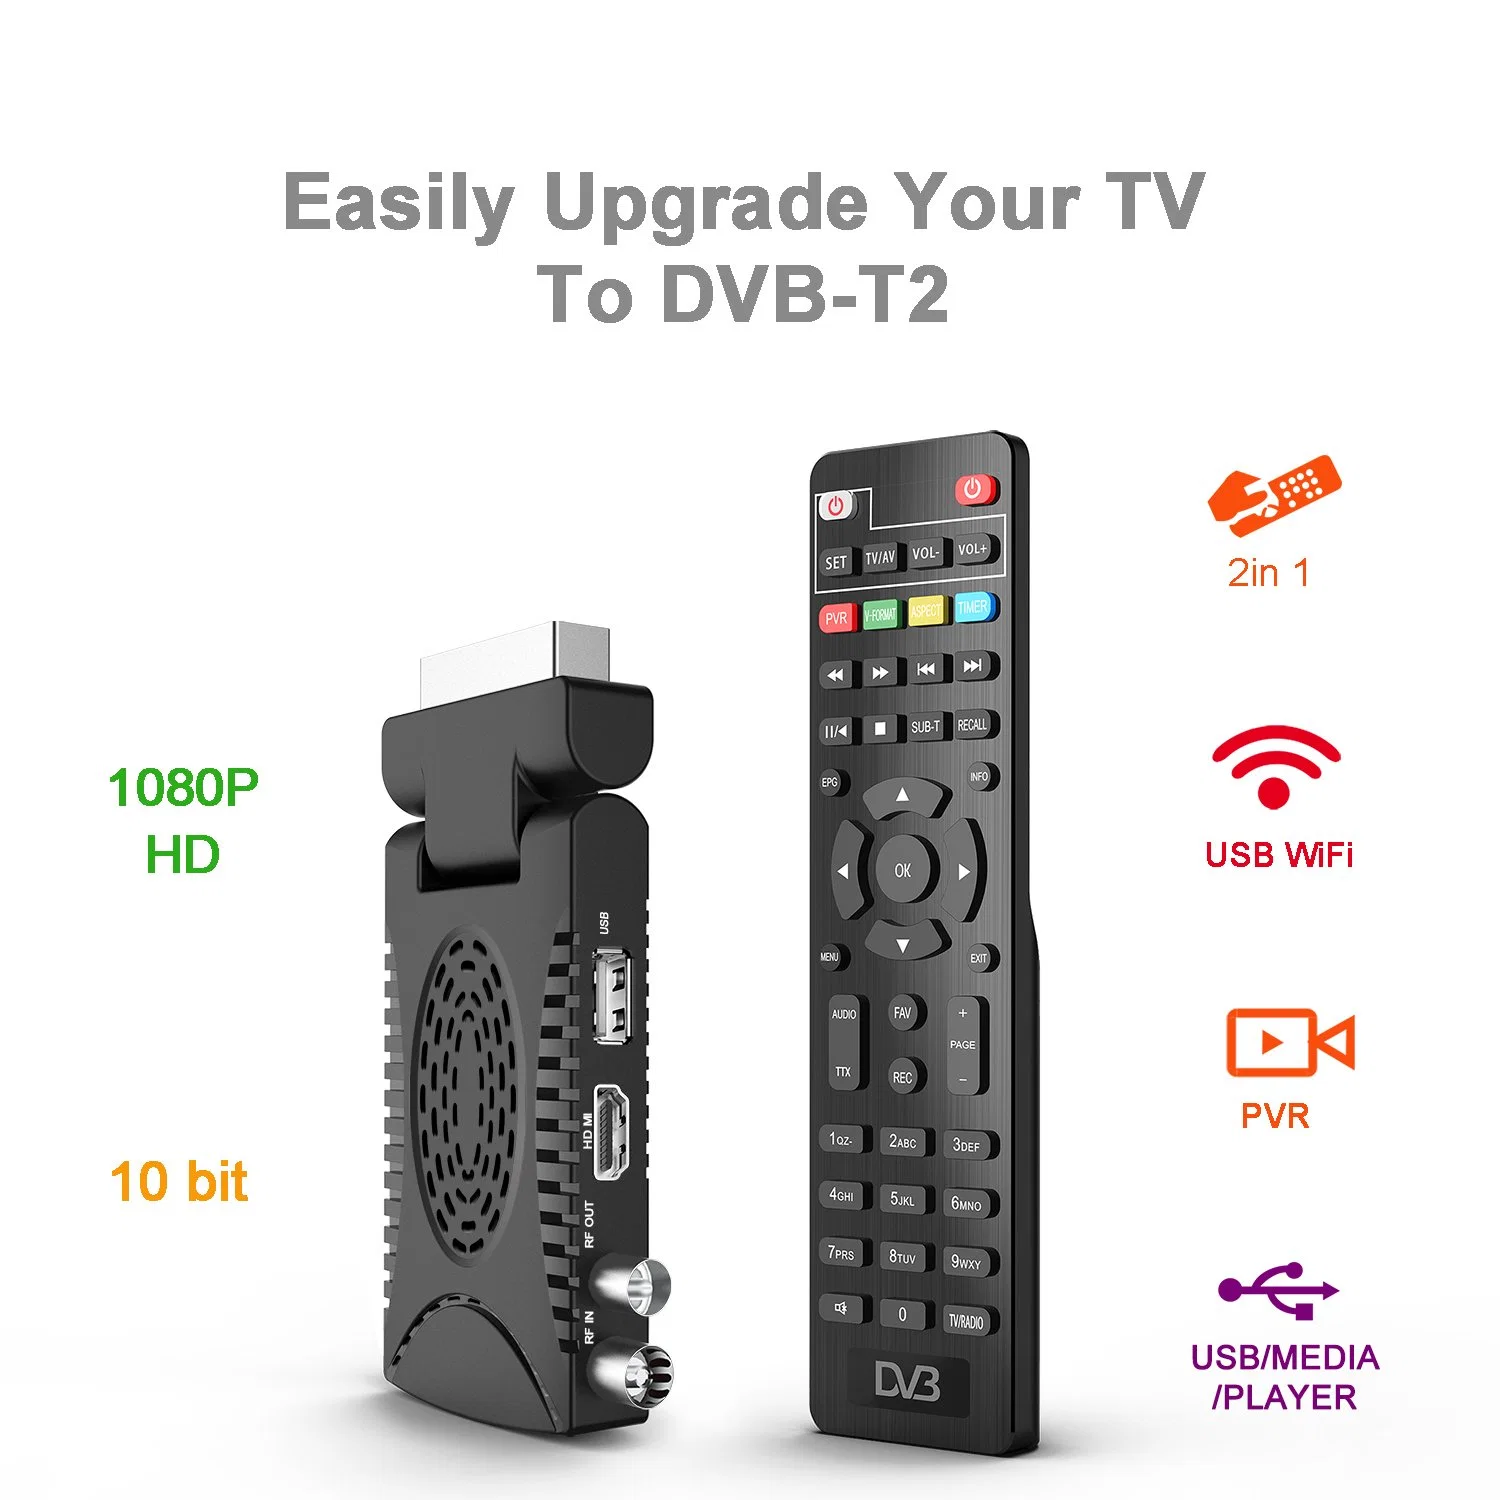 جهاز استقبال DVB-T2 بآلة فك تشفير جهاز فك تشفير جهاز فك تشفير جهاز فك تشفير جهاز فك تشفير رقمي عالي الوضوح بالكامل وحدة حماية التلفزيون T265 H265 HEVC 10 Bits TV Stick